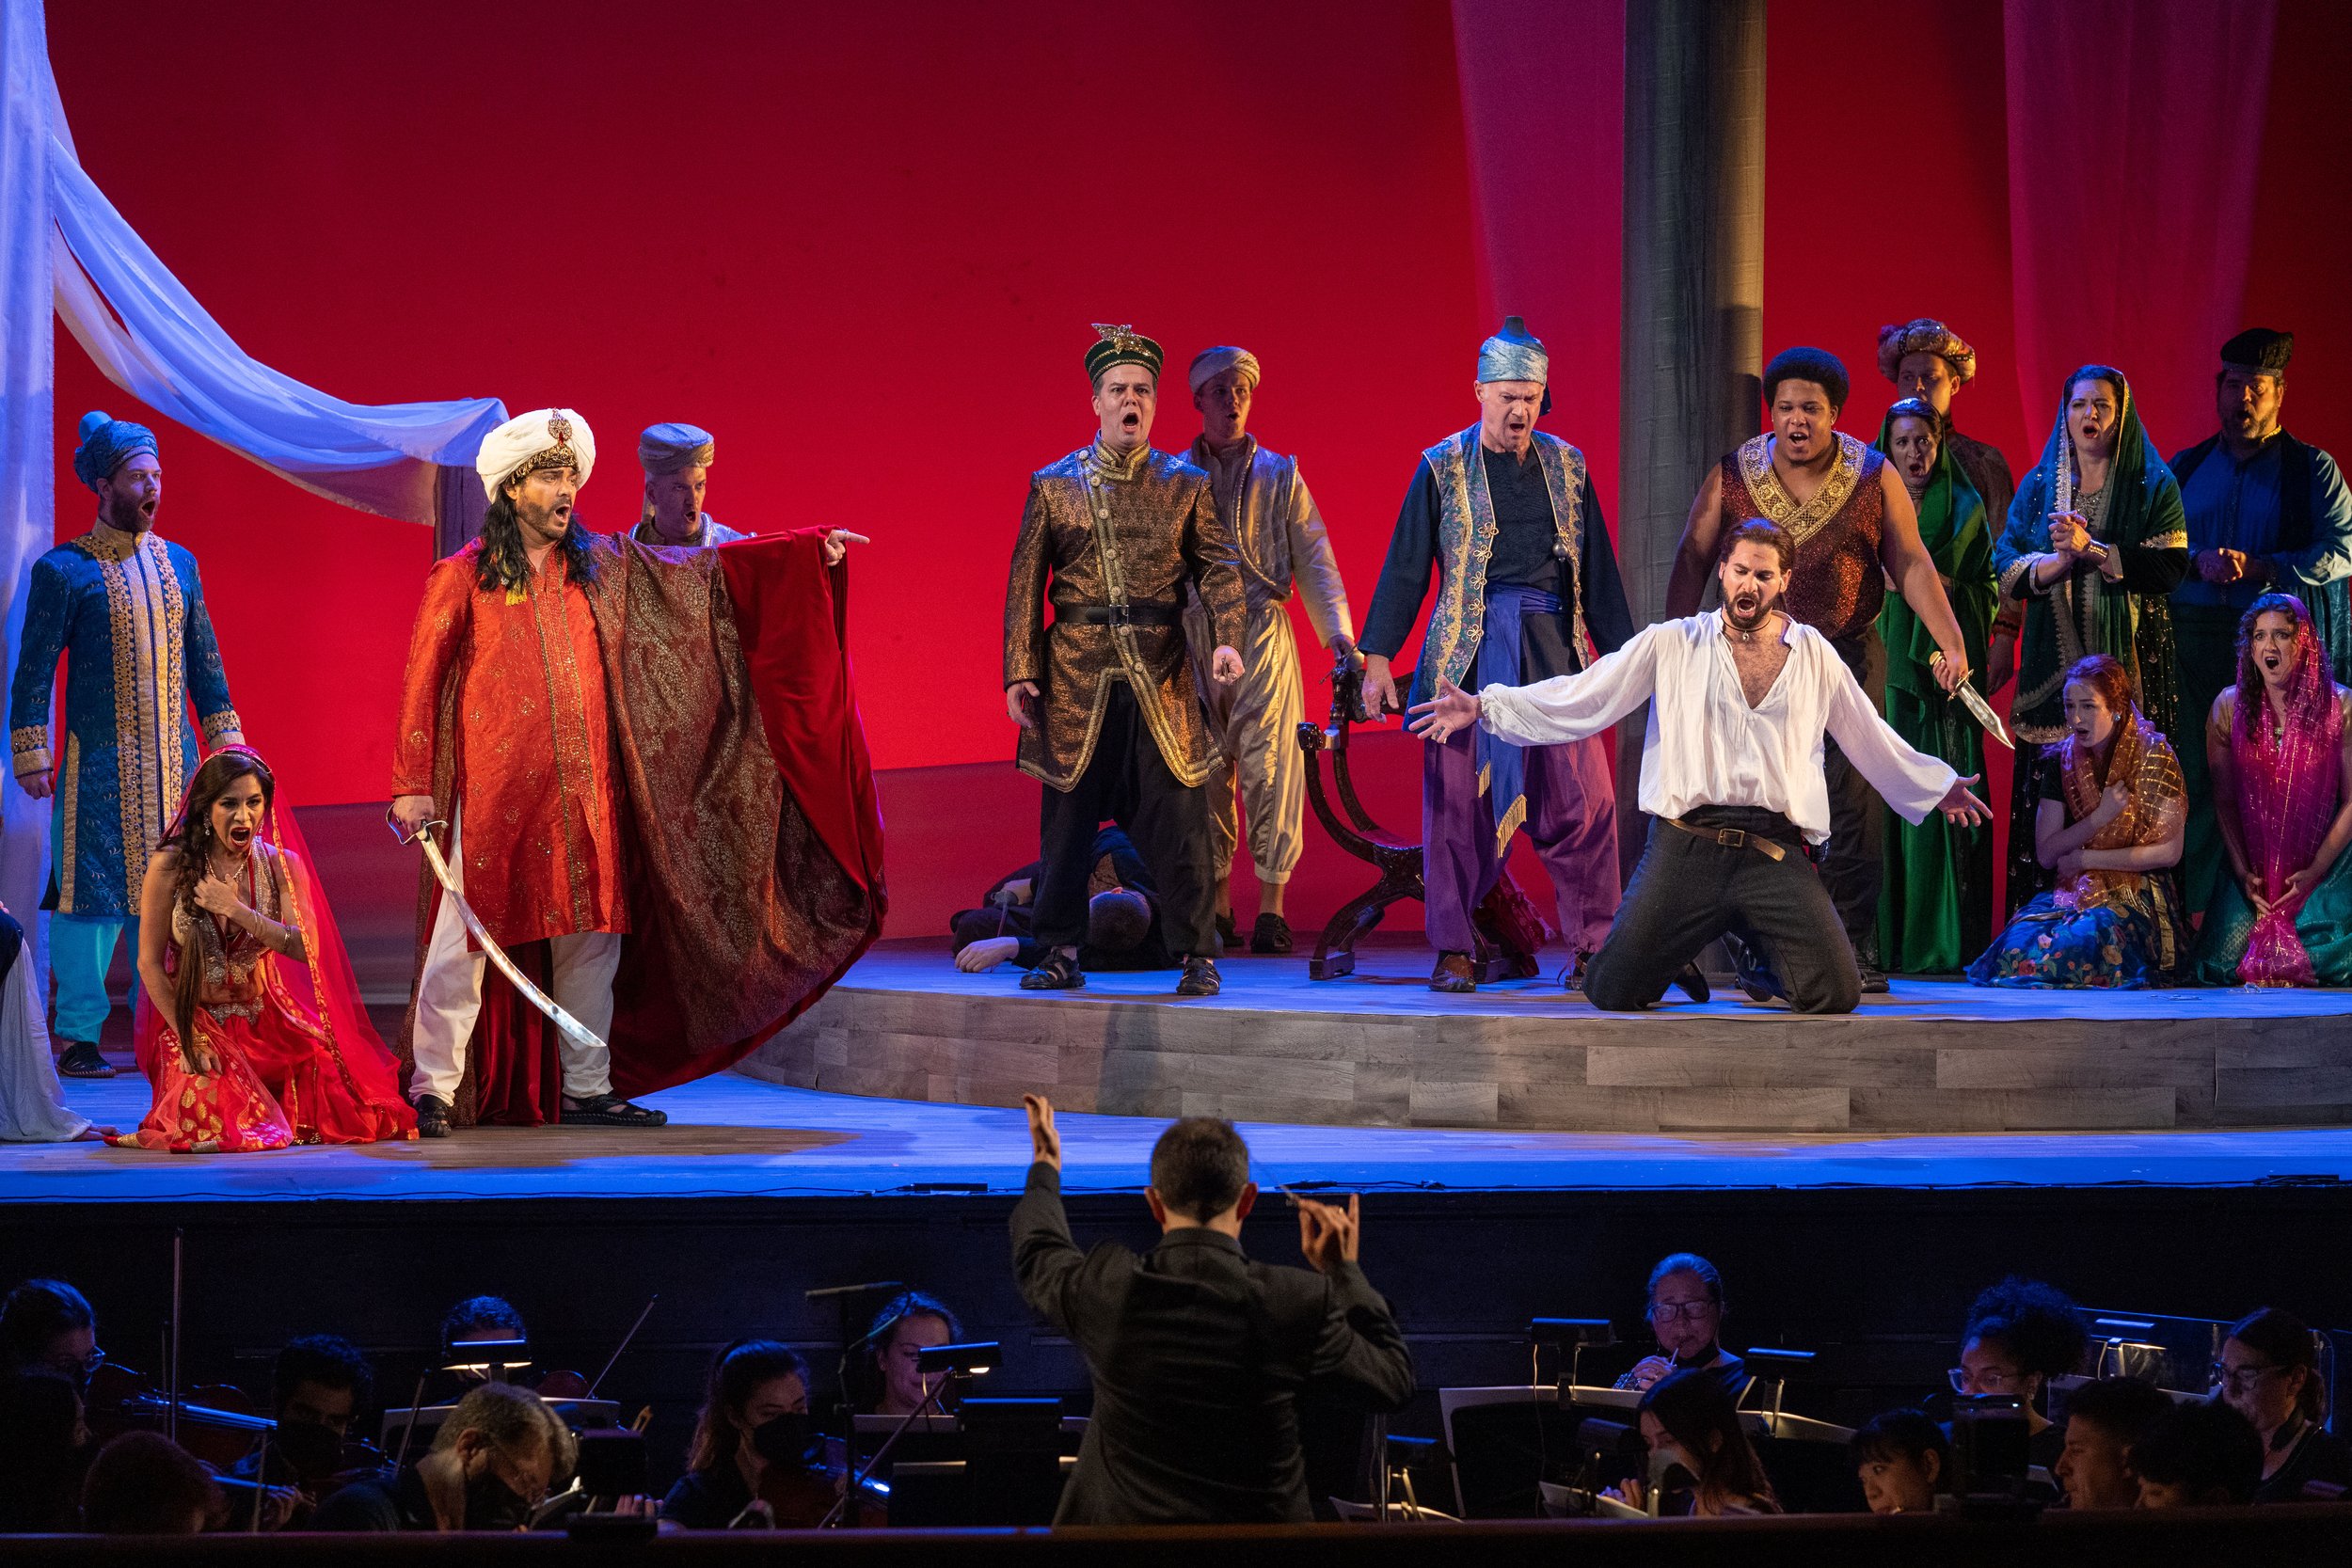  Opera Festival of Chicago presents Verdi’s “Il Corsaro.” 